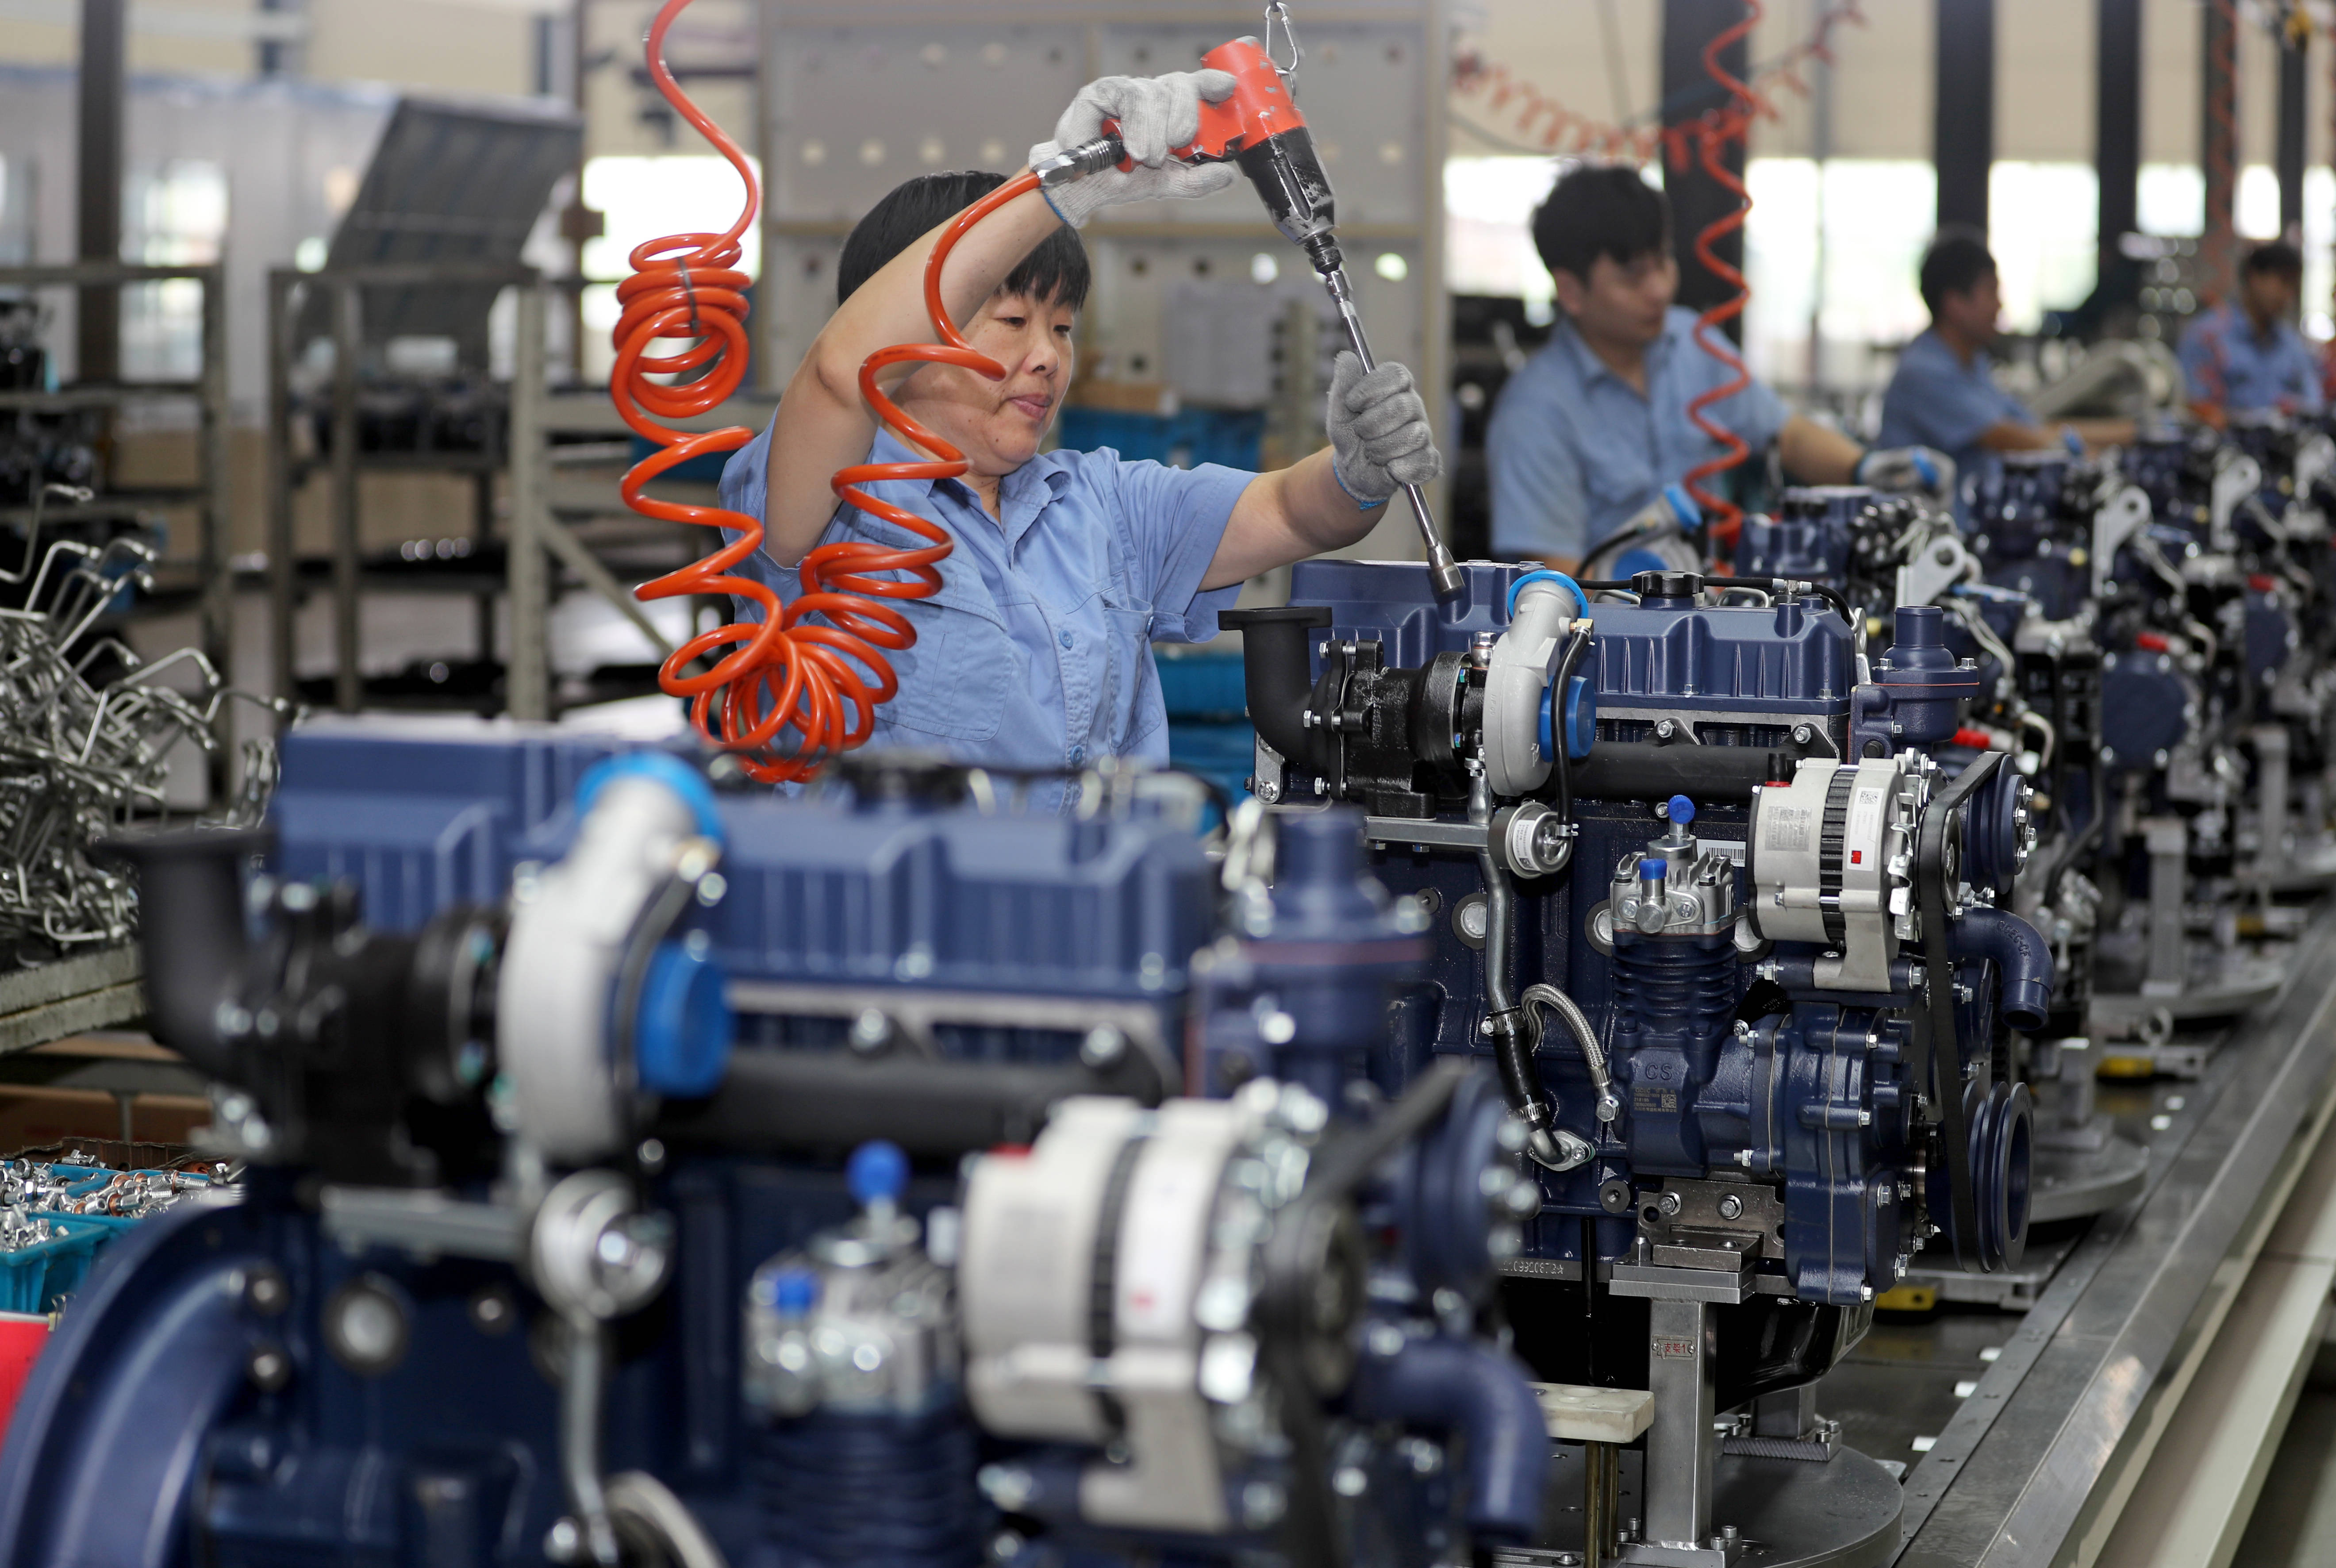 9月8日,在安徽全椒经济开发区,工人在一家装备制造企业装配工程机械